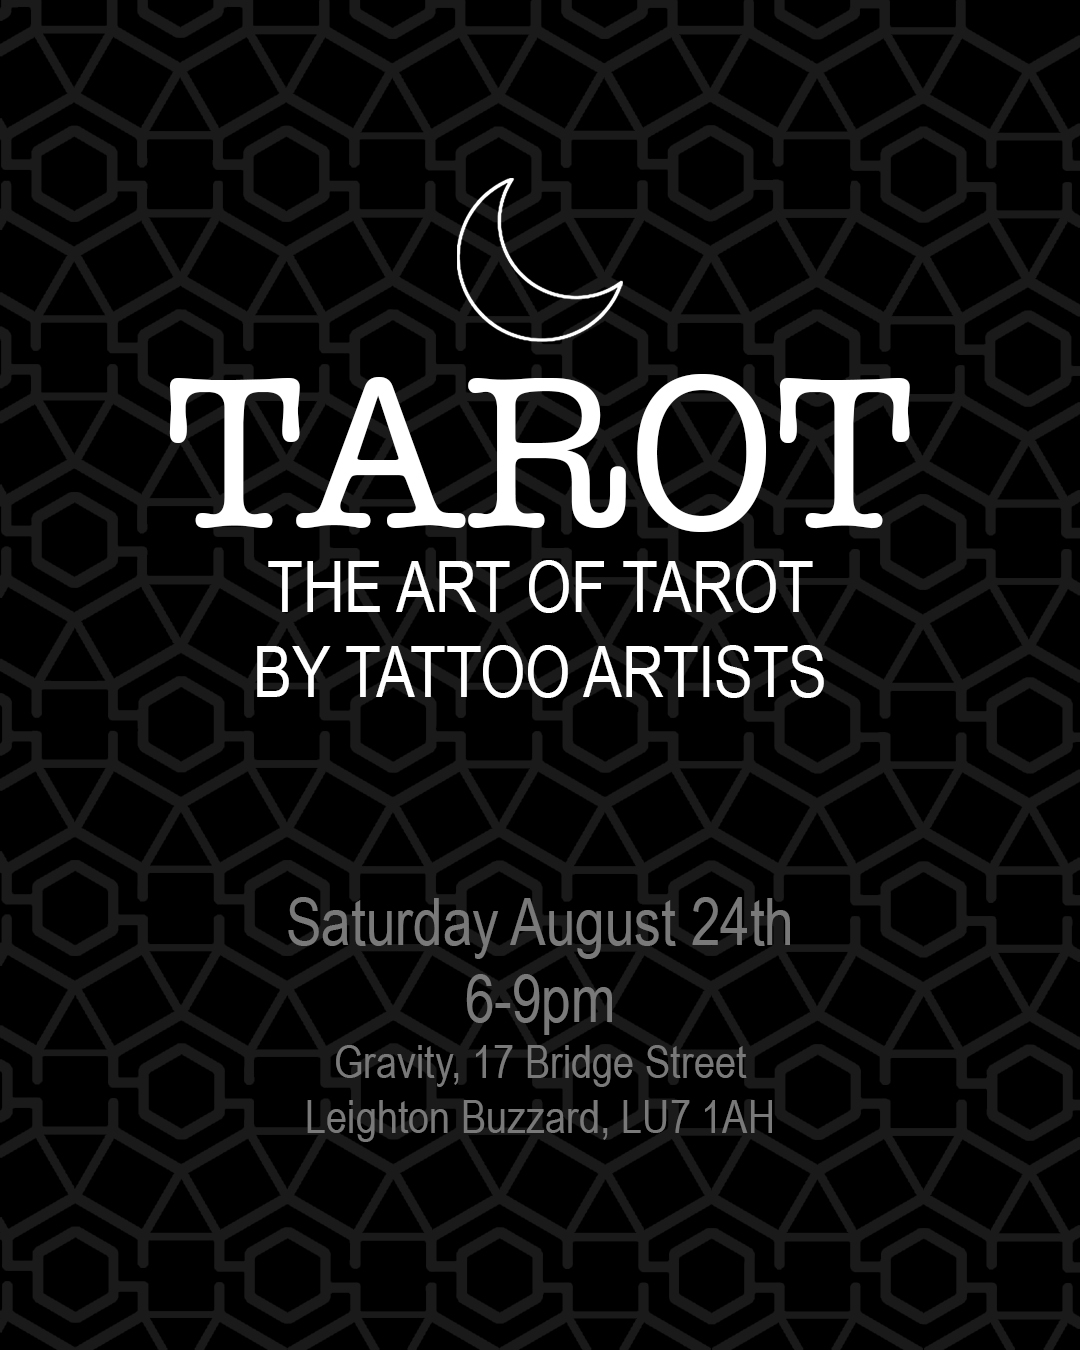 The Art of Tarot by Tattooists